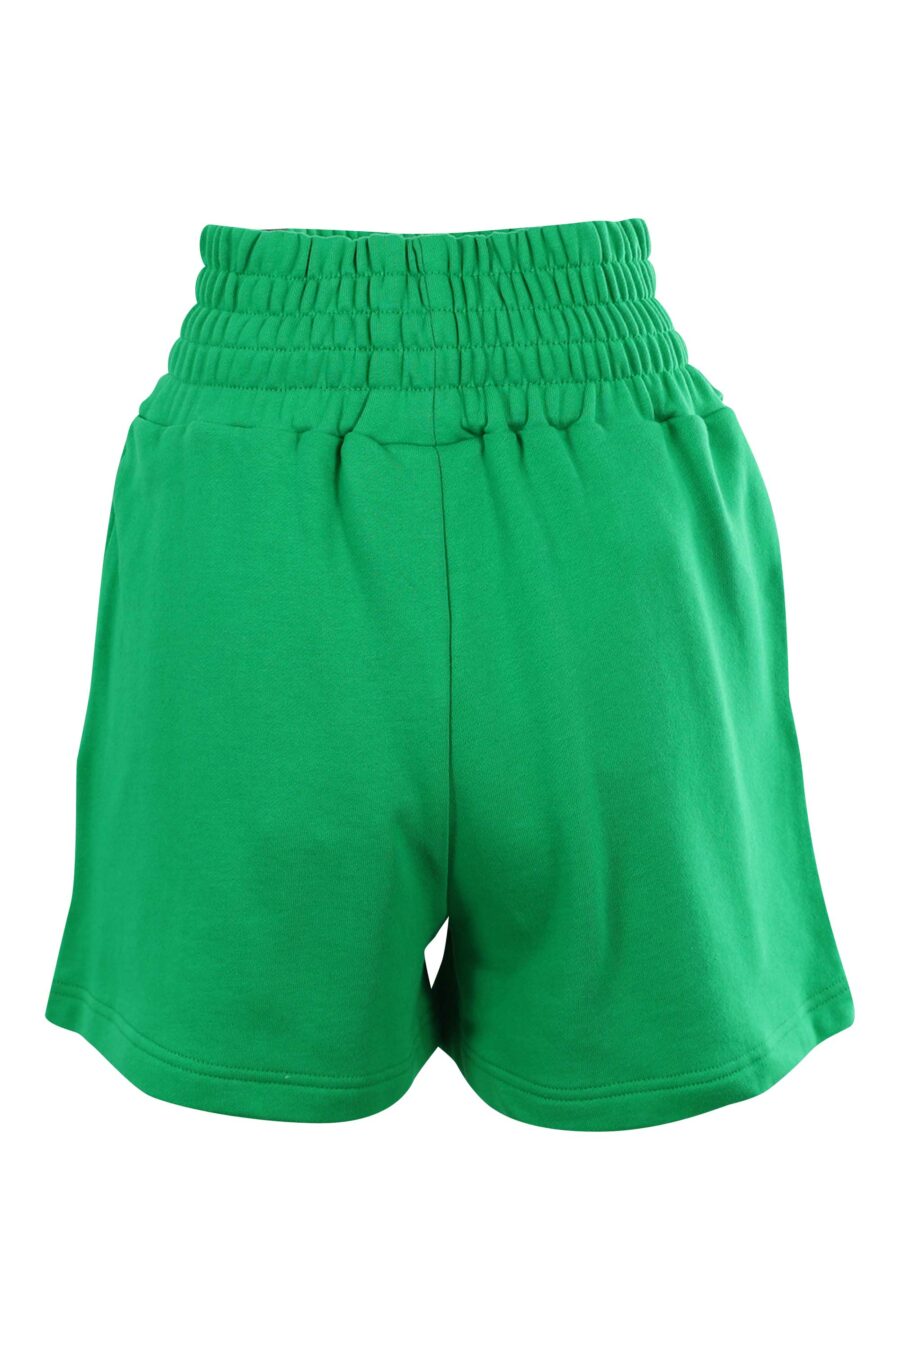 Pantalón de chándal verde corto con logo ojo y estrella - 8052672415479 2